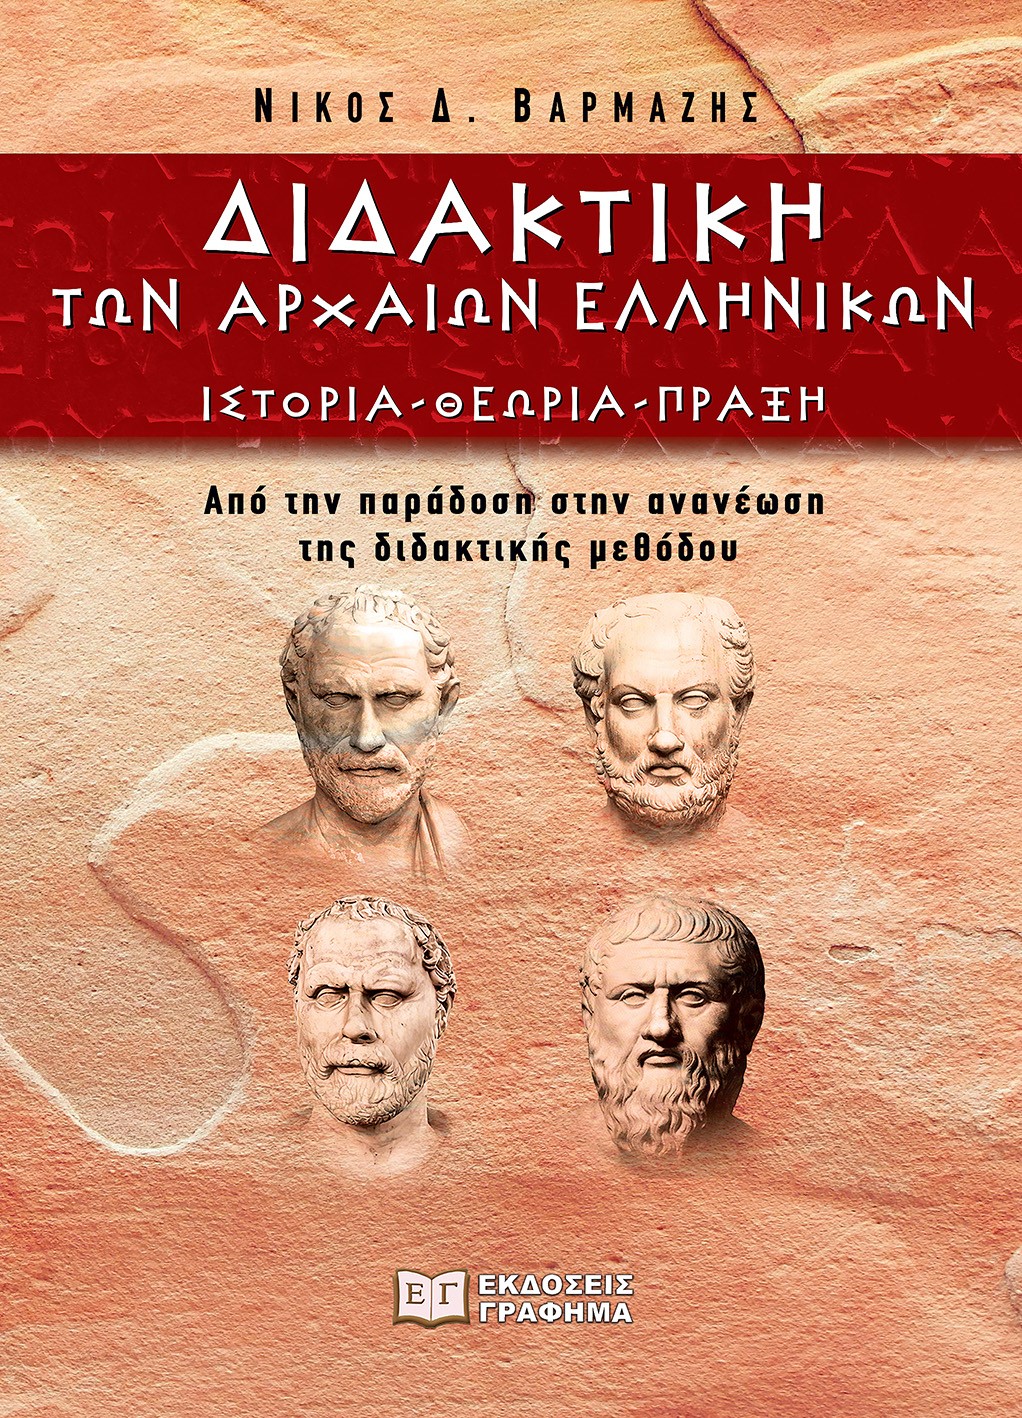 Διδακτική των αρχαίων ελληνικών